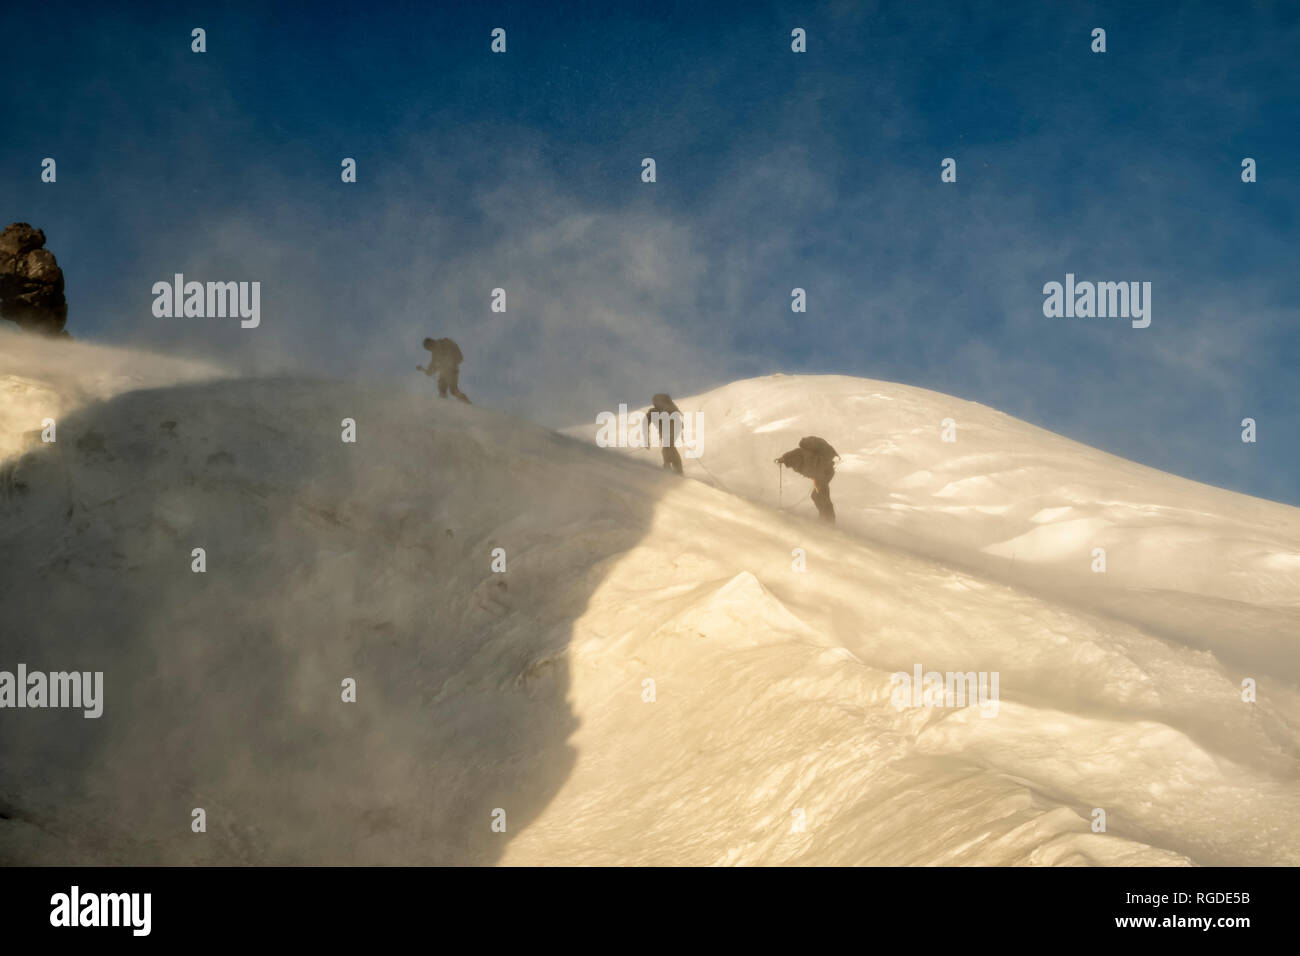 Russia, Upper Baksan Valley, Caucasus, Mountaineers ascending Mount Elbrus Stock Photo